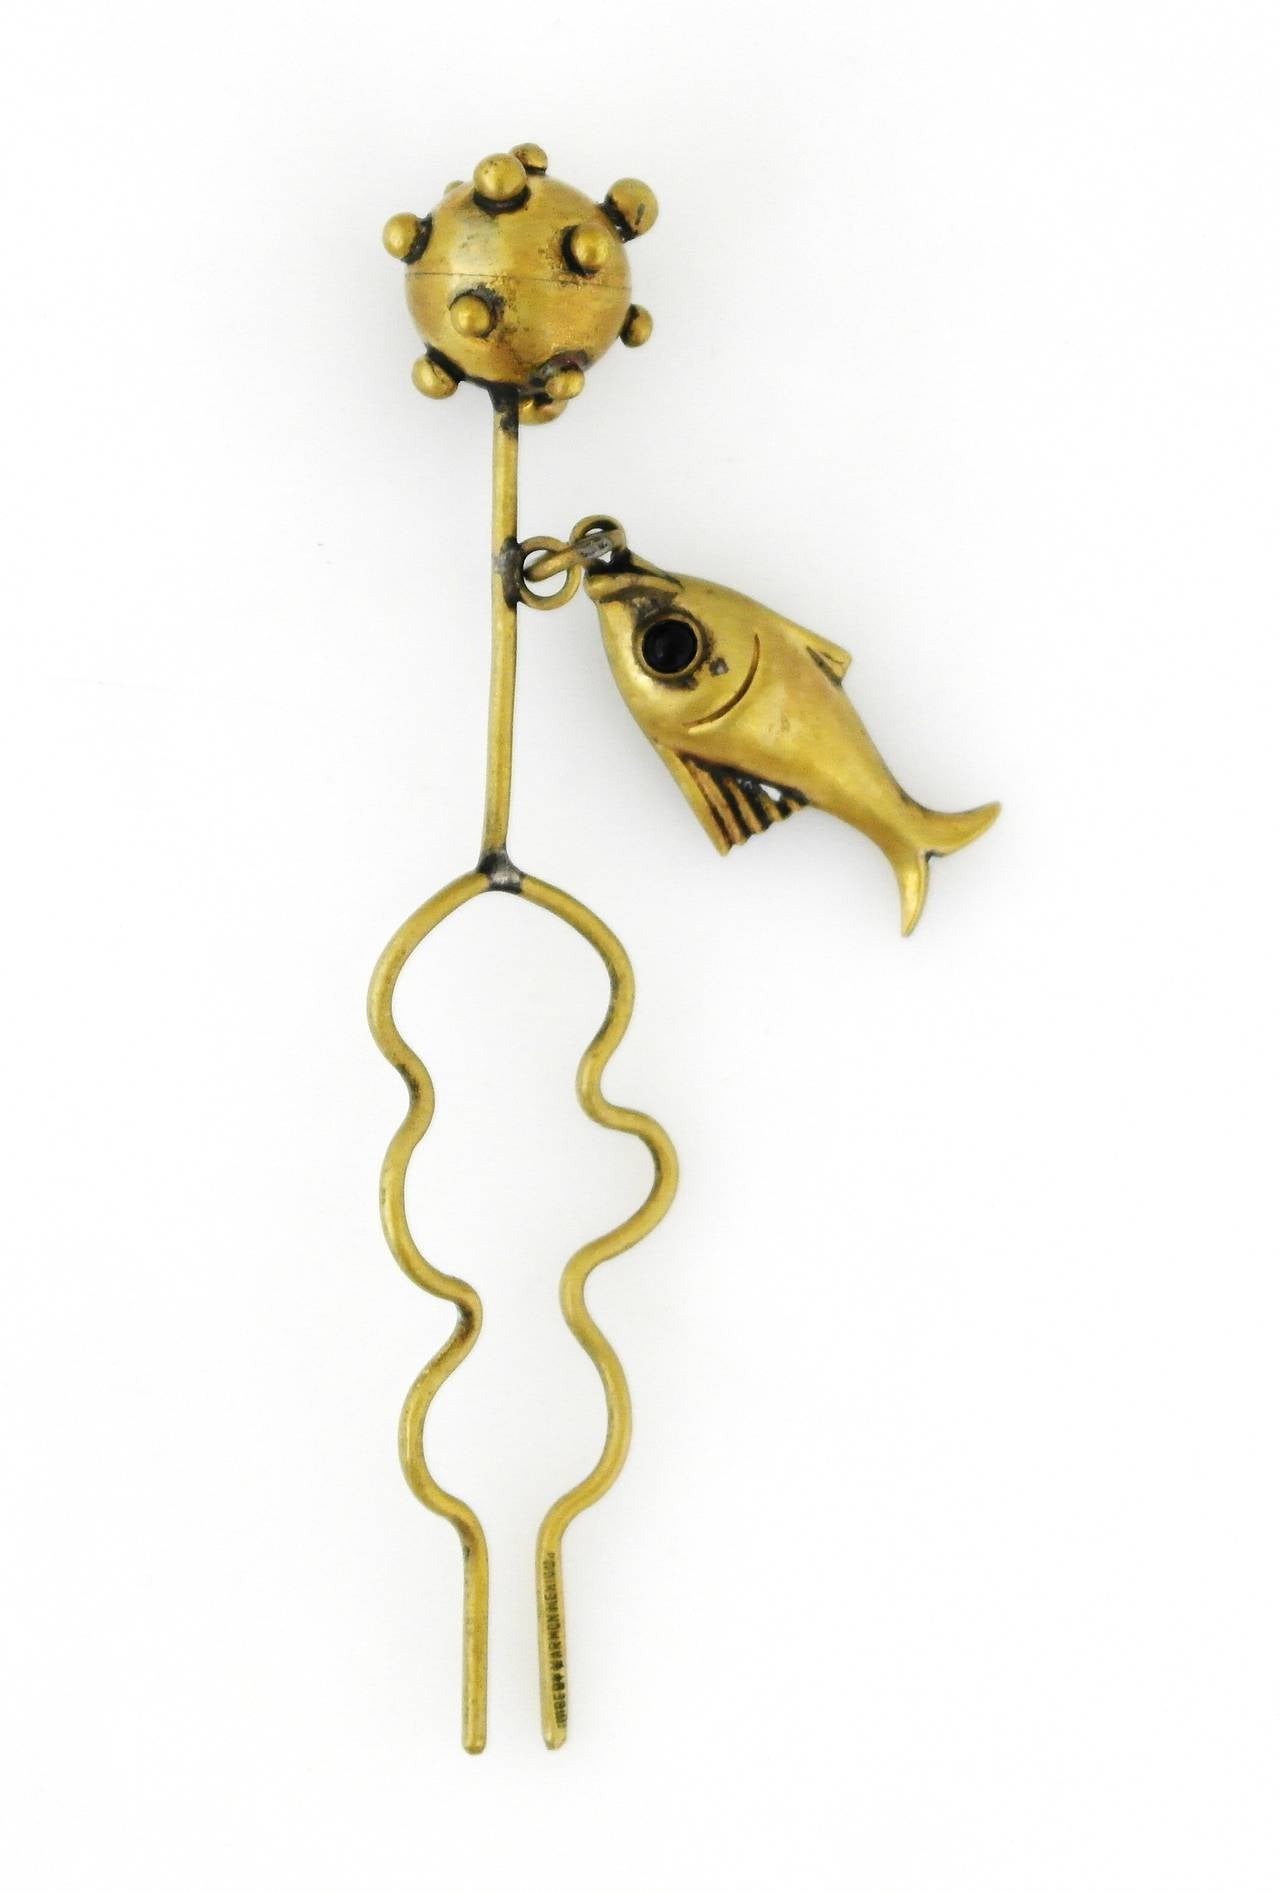 Women's Hubert Harmon Whimsical Brass Lady's Hair Ornament